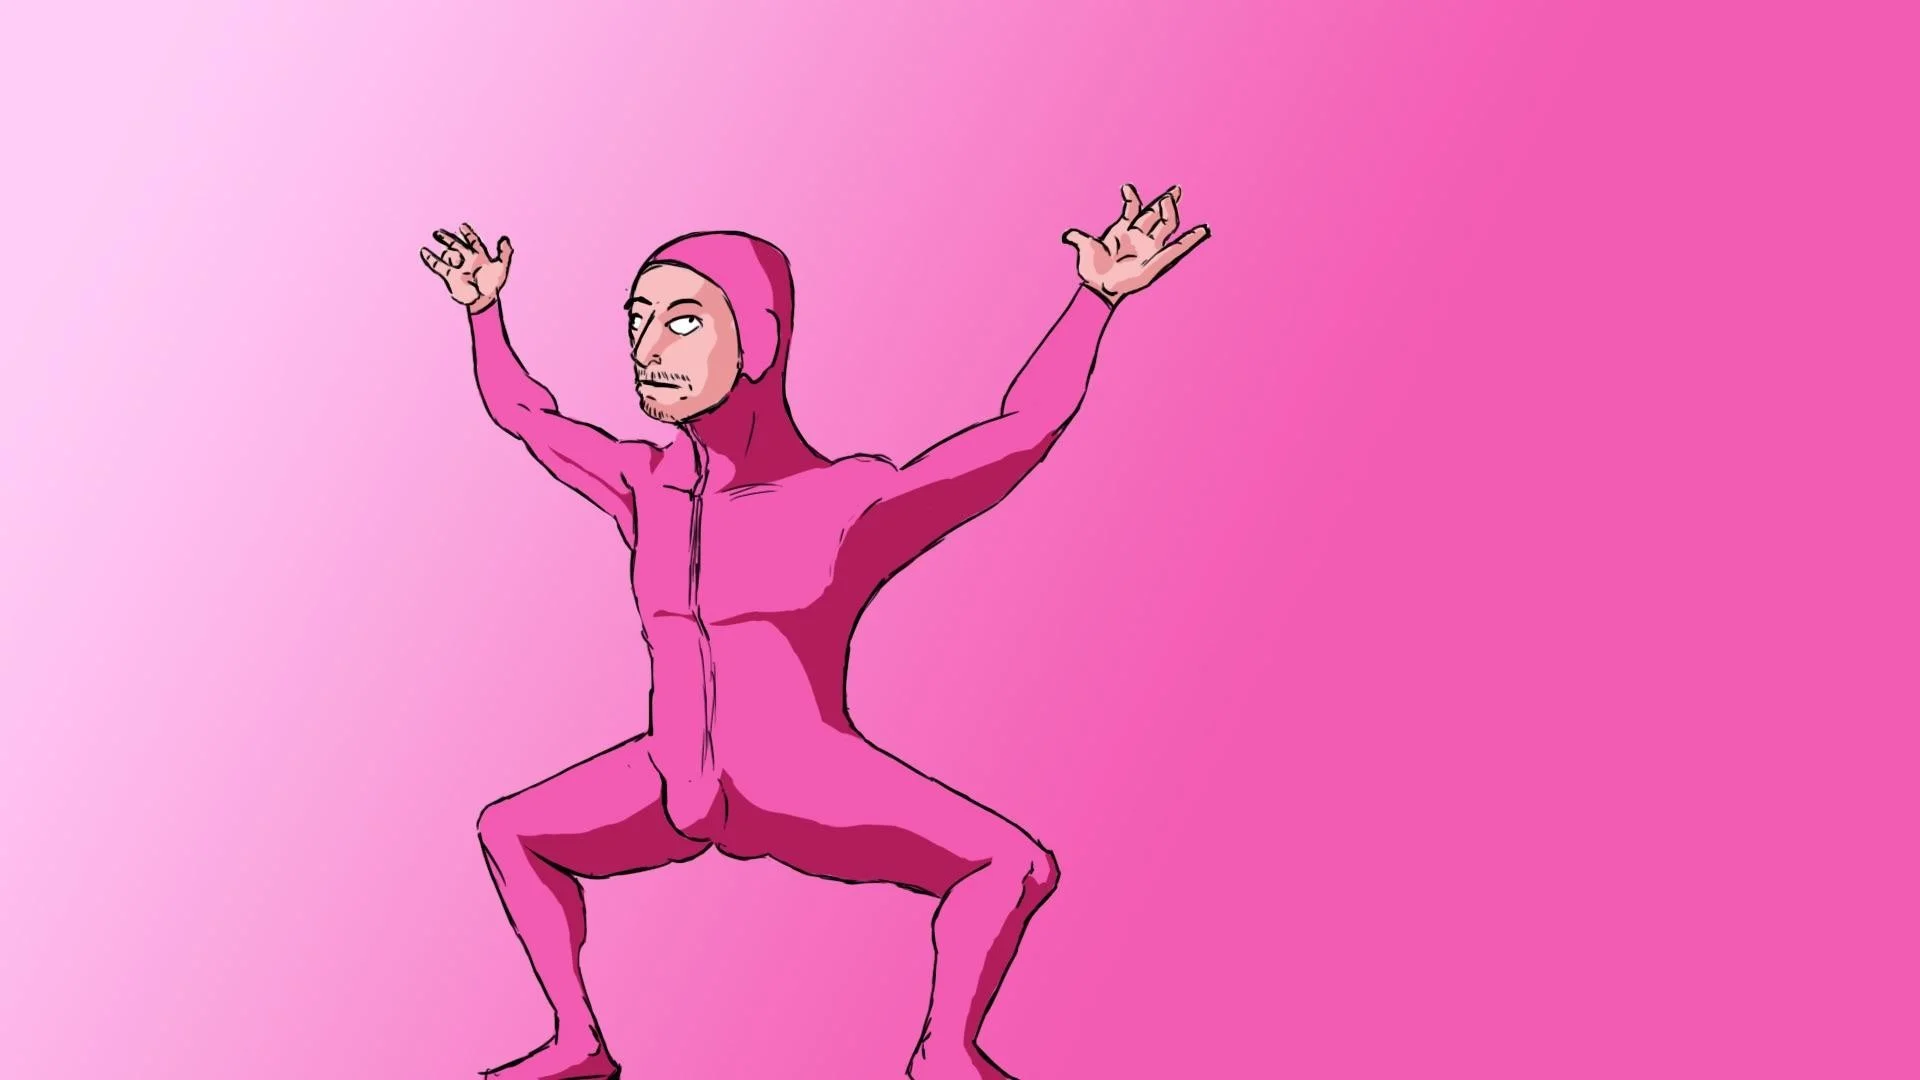 I drew Pink Guy